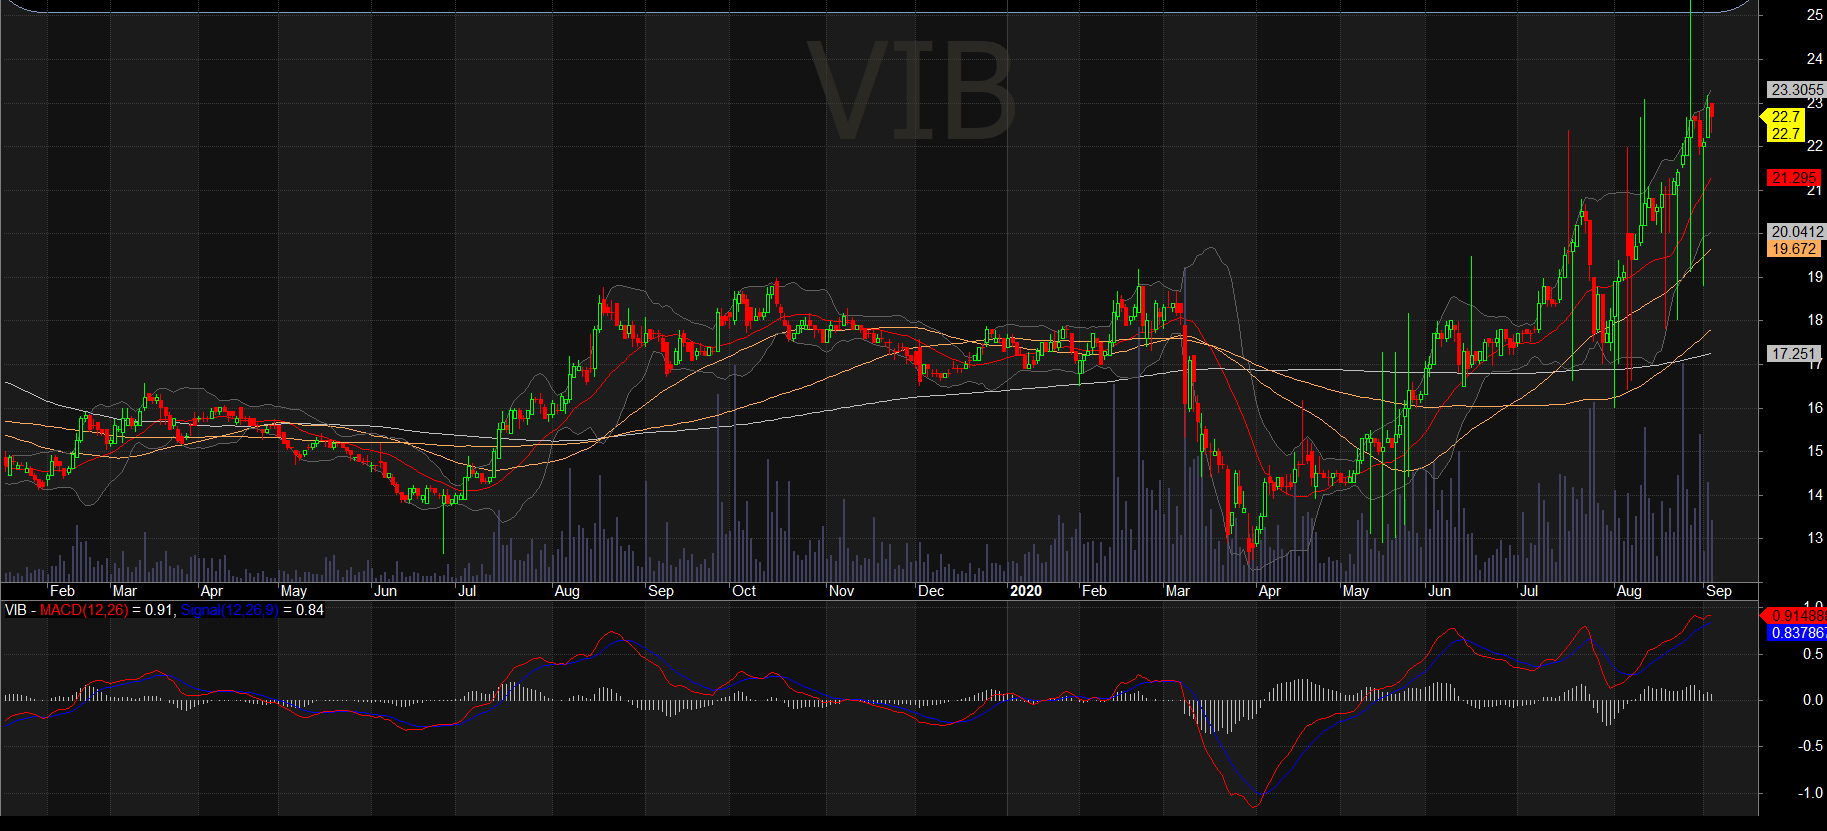 Giá cổ phiếu VIB giảm gần 20% nhưng vẫn liên tục lập đỉnh